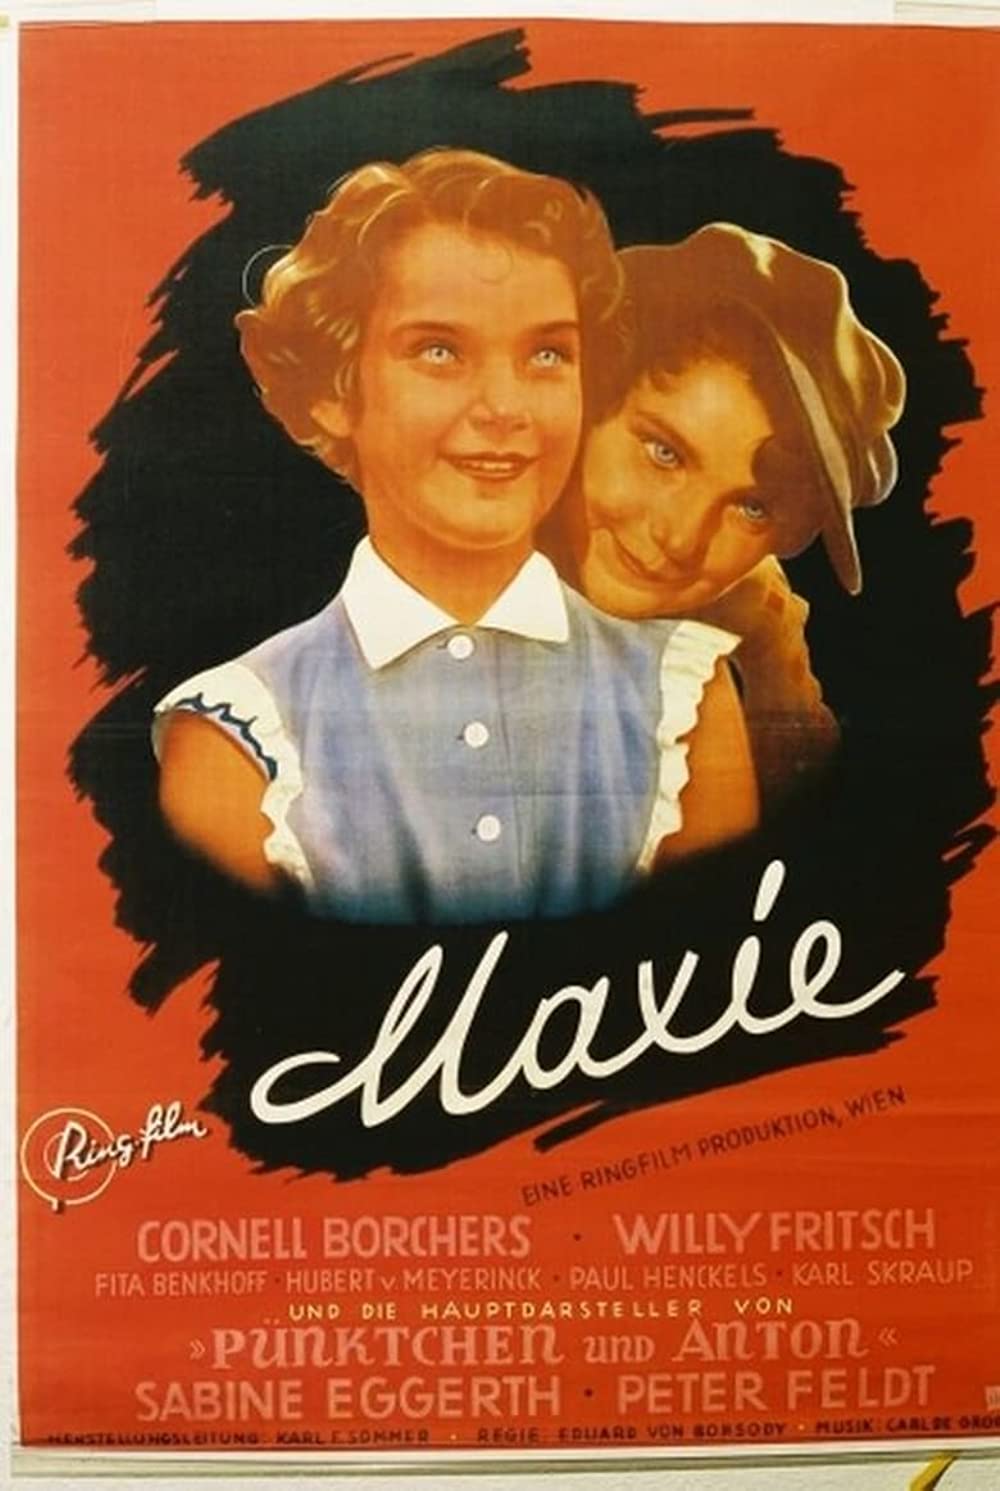 Filmbeschreibung zu Maxie (1954)